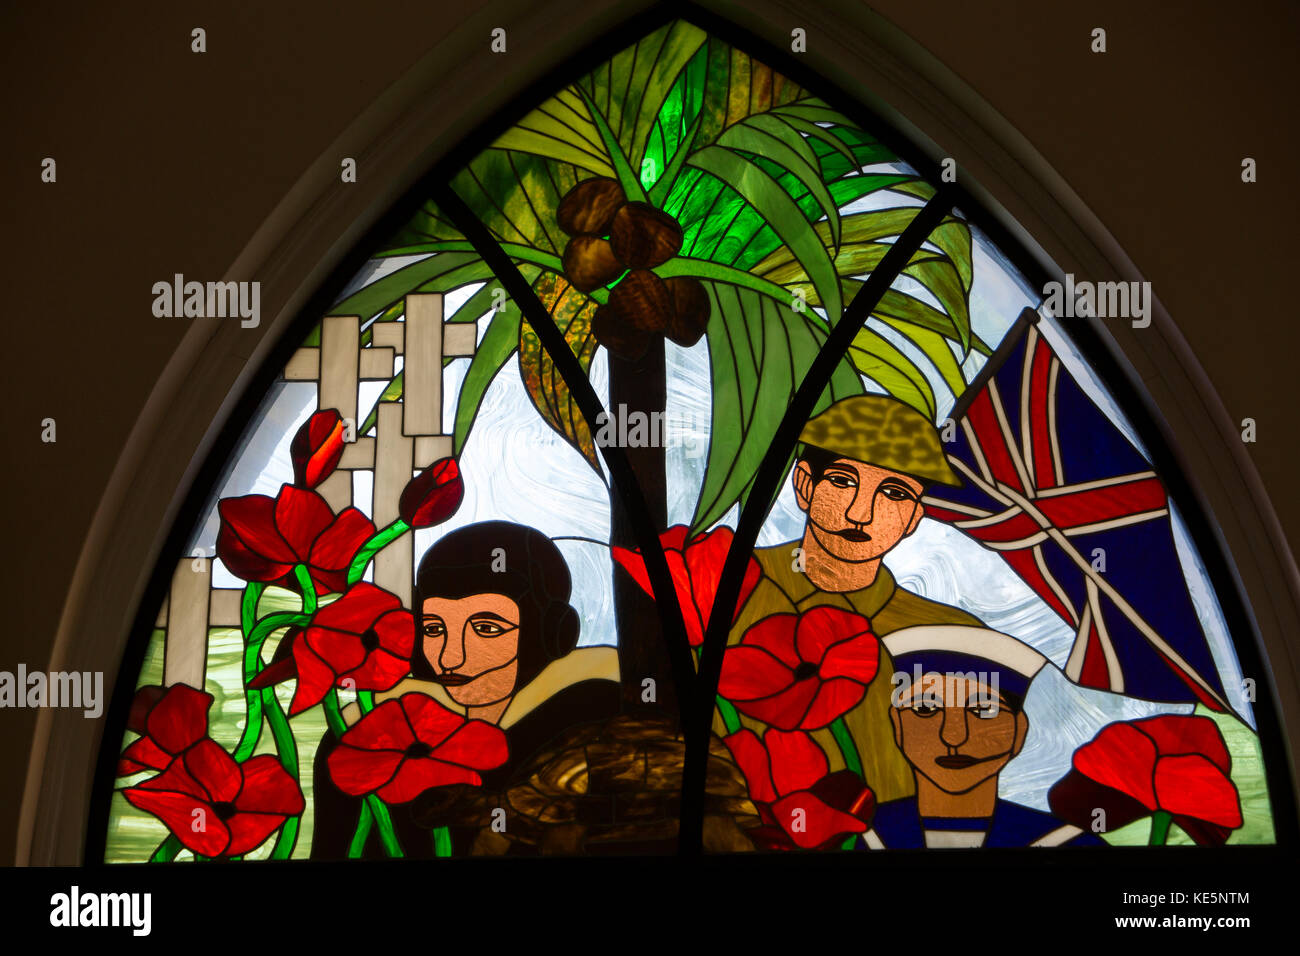 Les Seychelles, Mahe, St Paul's cathédrale anglicane de guerre morts vitrail du souvenir Banque D'Images